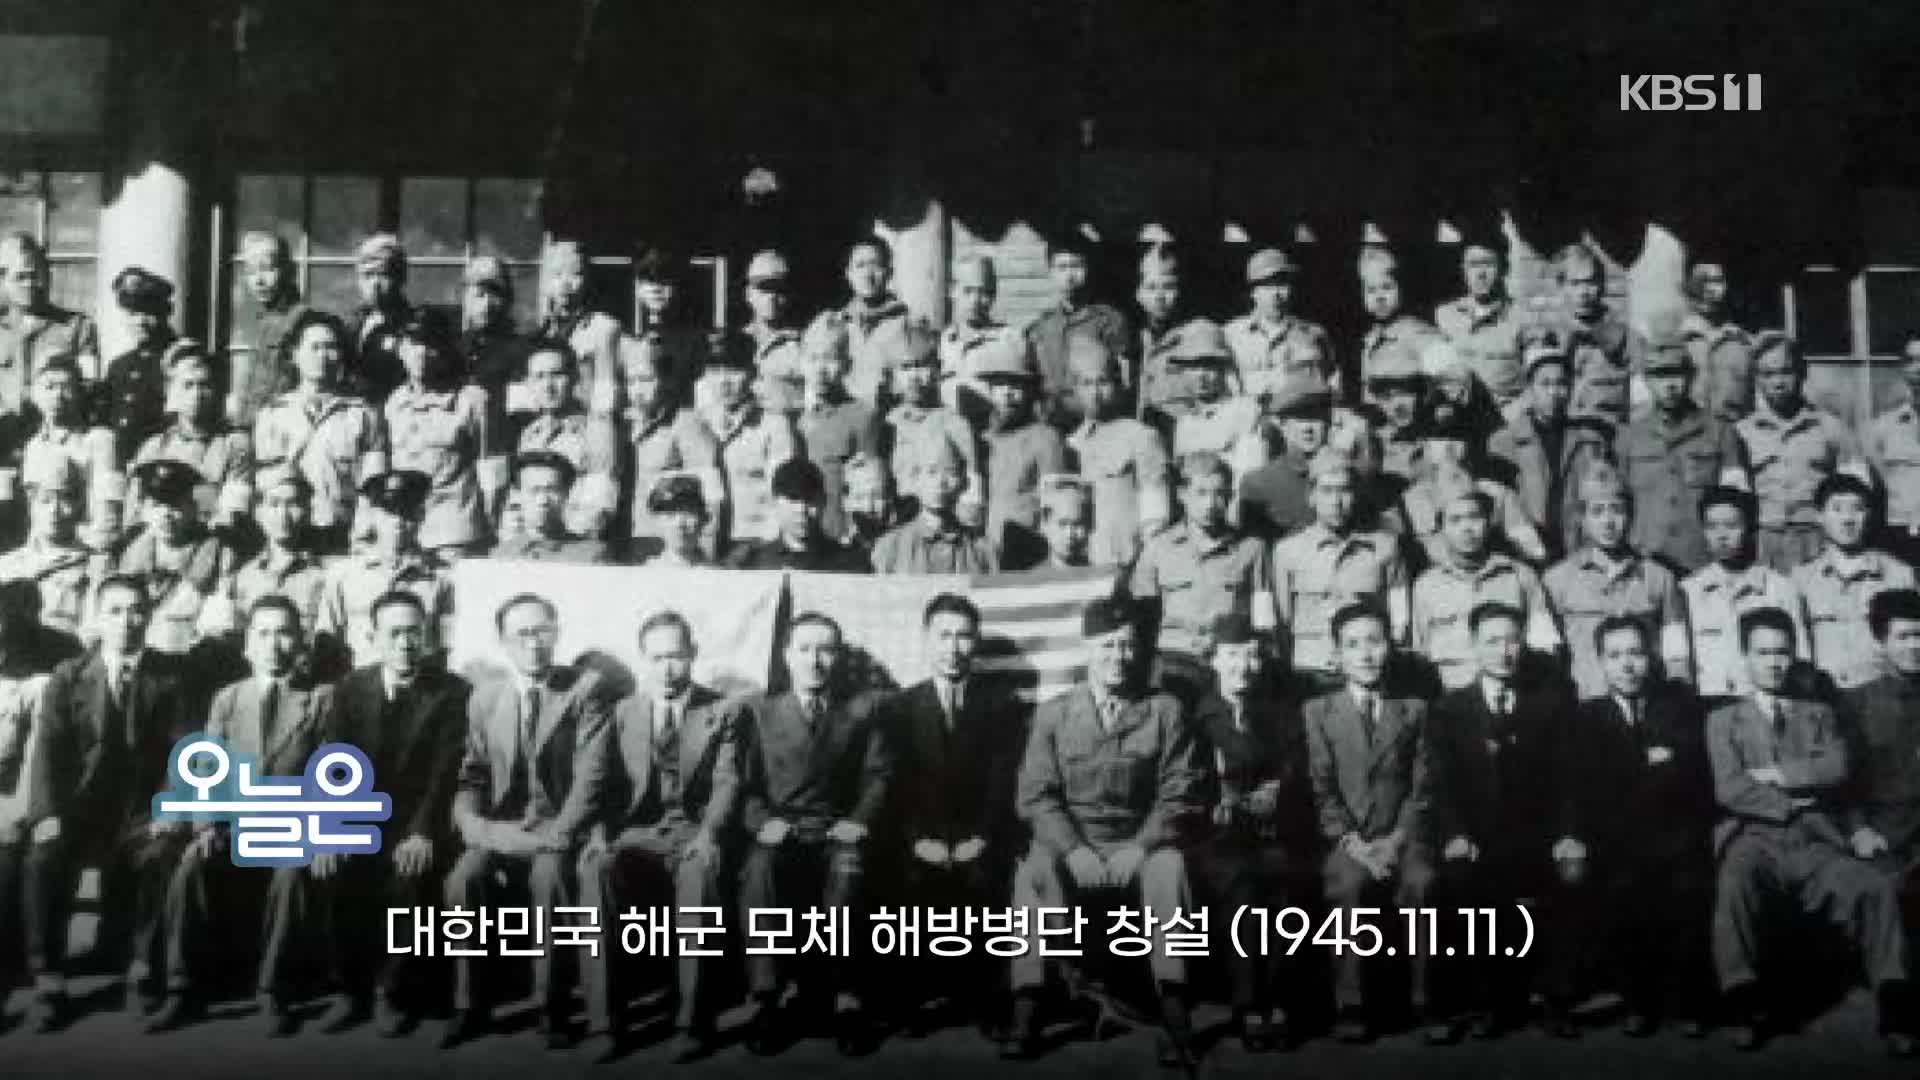 [오늘은] 대한민국 해군 모체 해방병단 창설 (1945.11.11.)